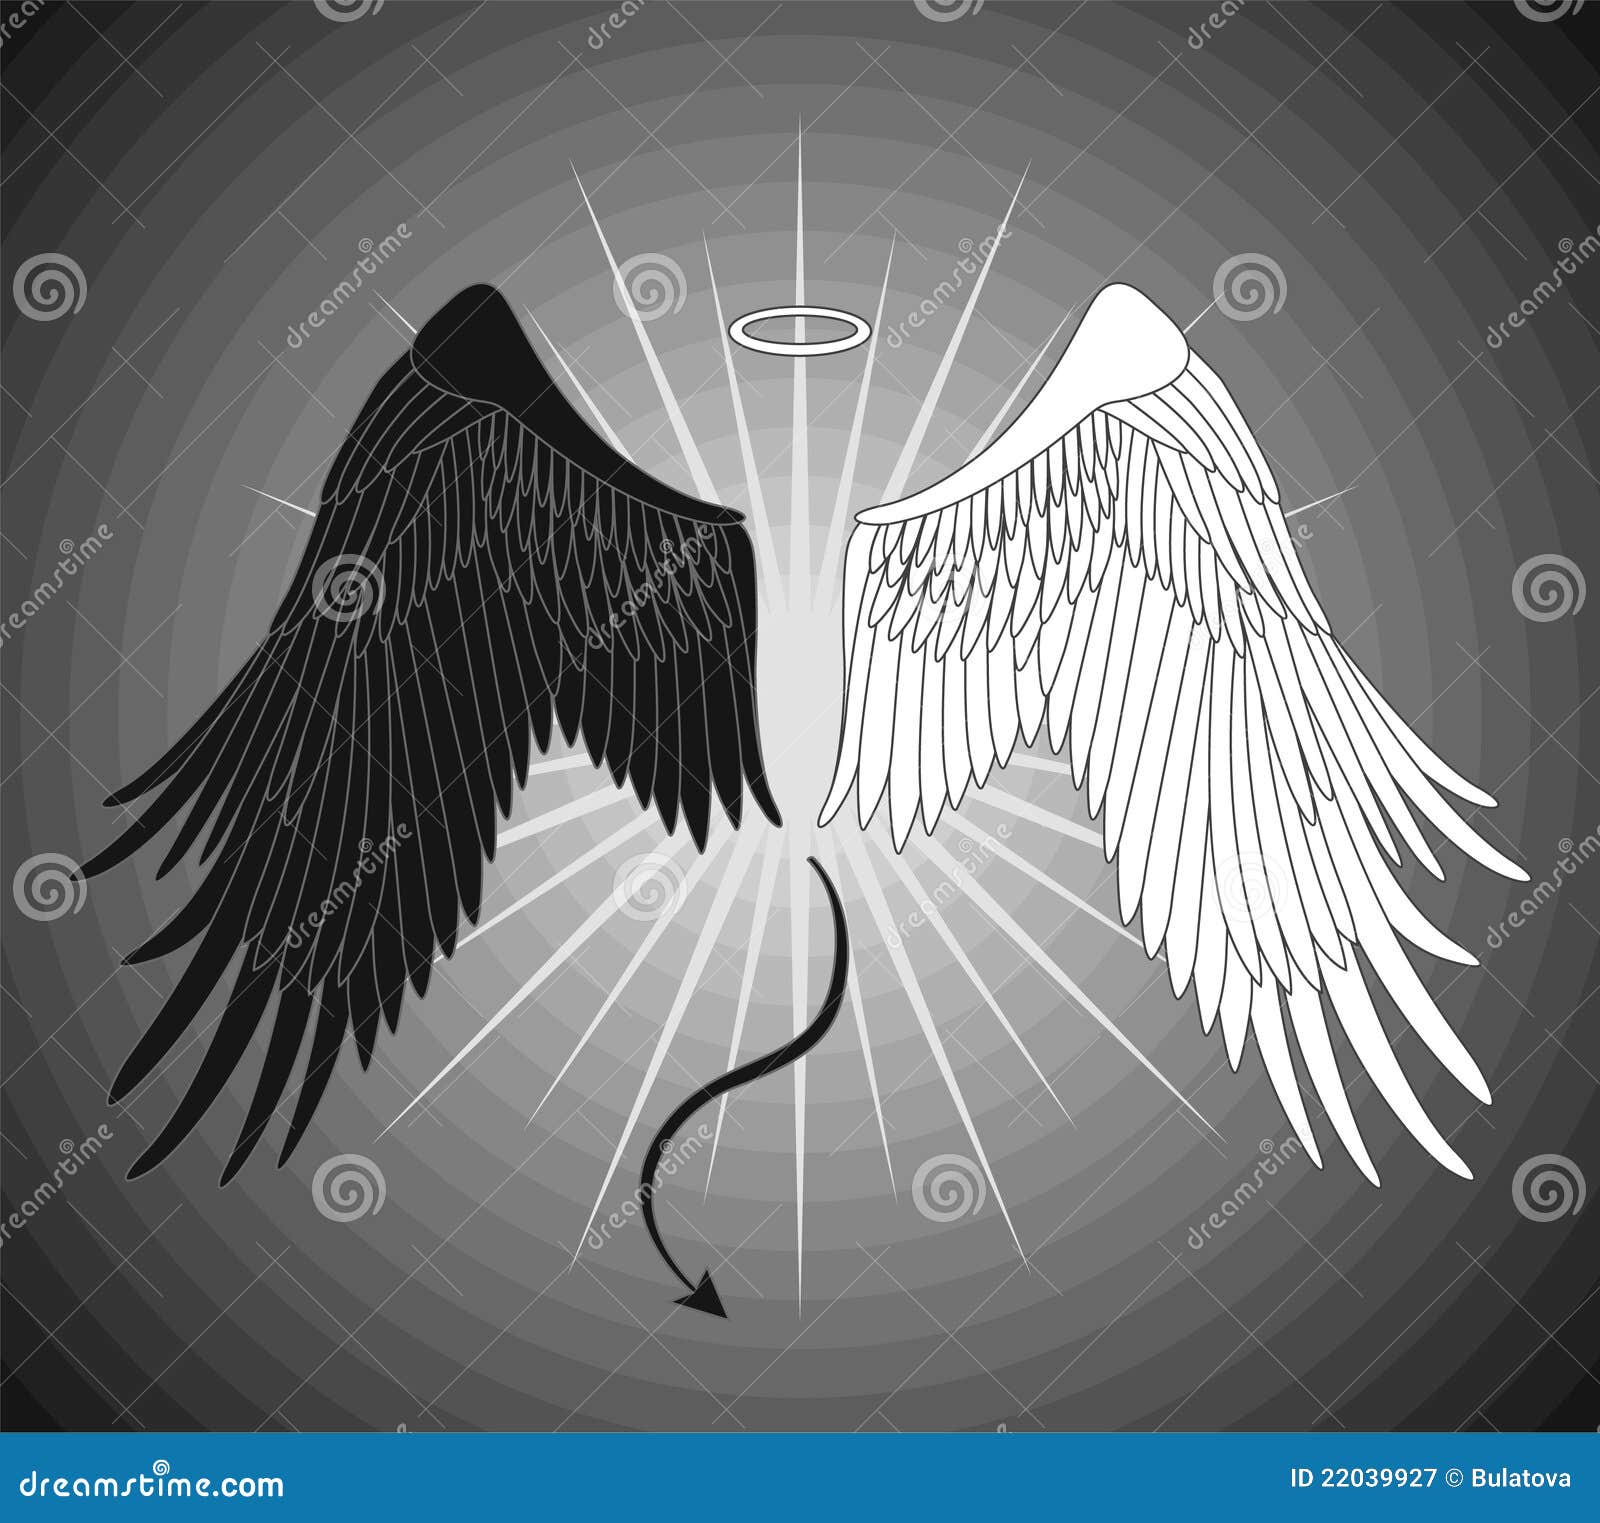 天使与魔鬼的装饰元素 天使翅膀和光环 向量例证. 插画 包括有 化妆舞会, 当事人, 例证, 图标, 晚上 - 157695520